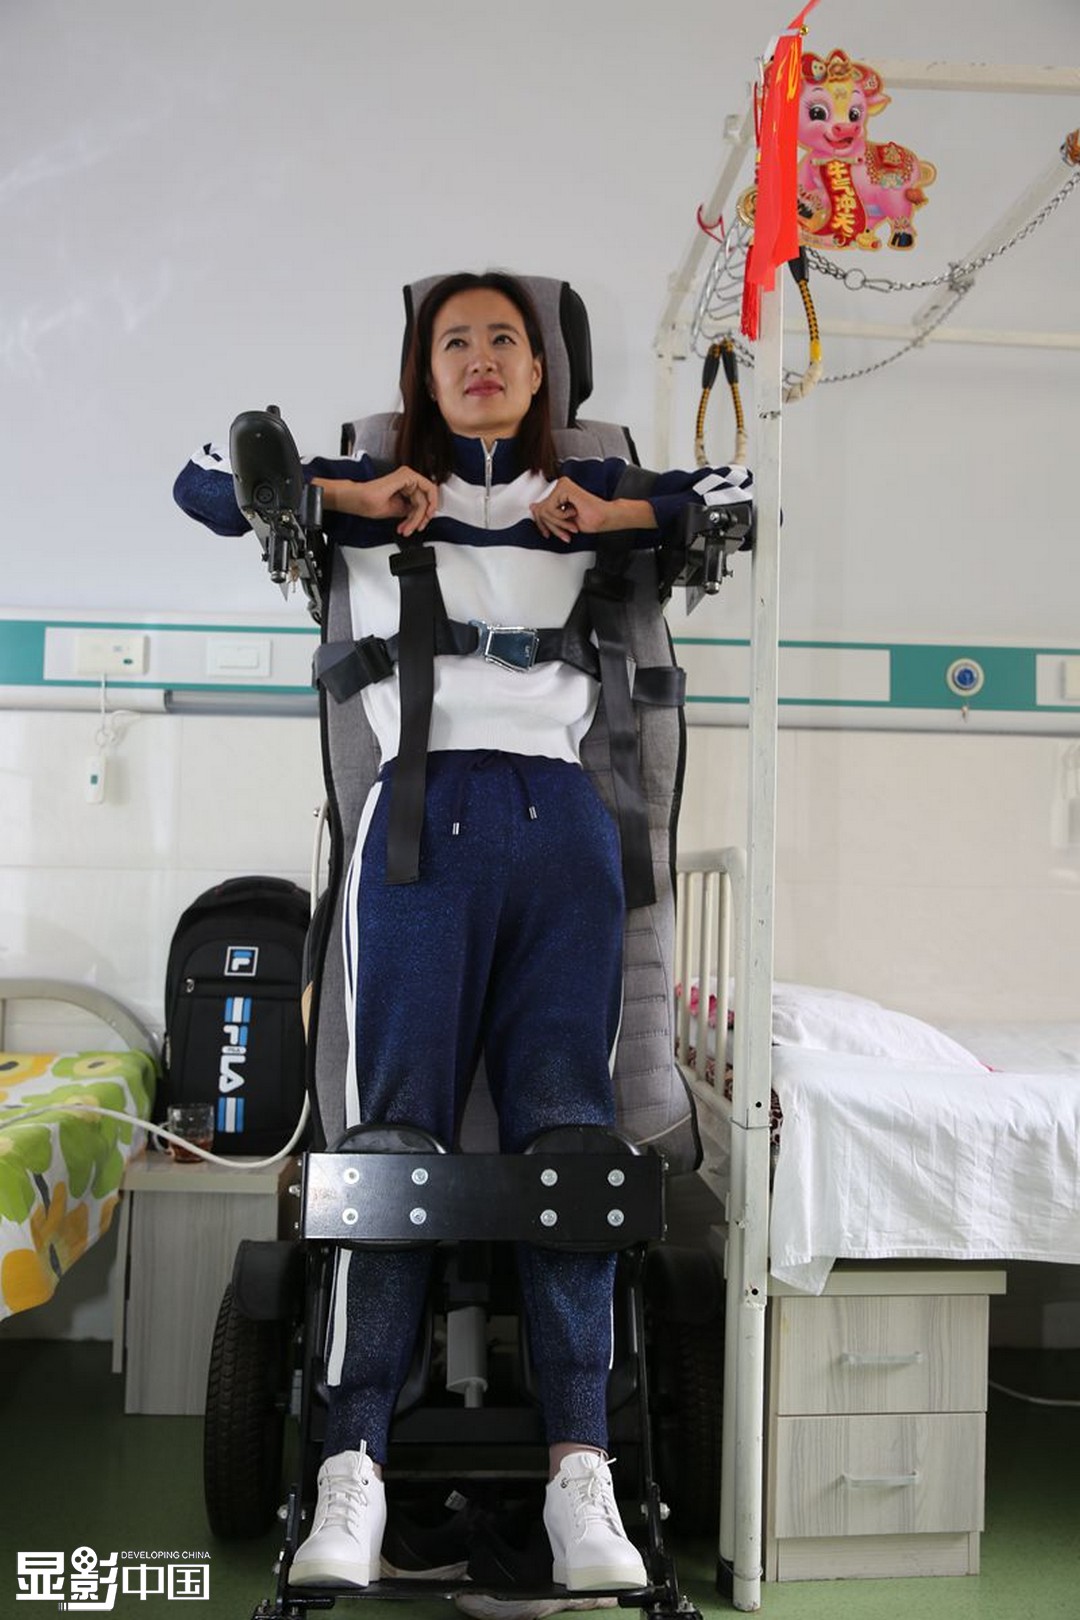 康枝英在使用北京一家企業為其捐贈的康復訓練儀器。新華網 楊騰格爾攝